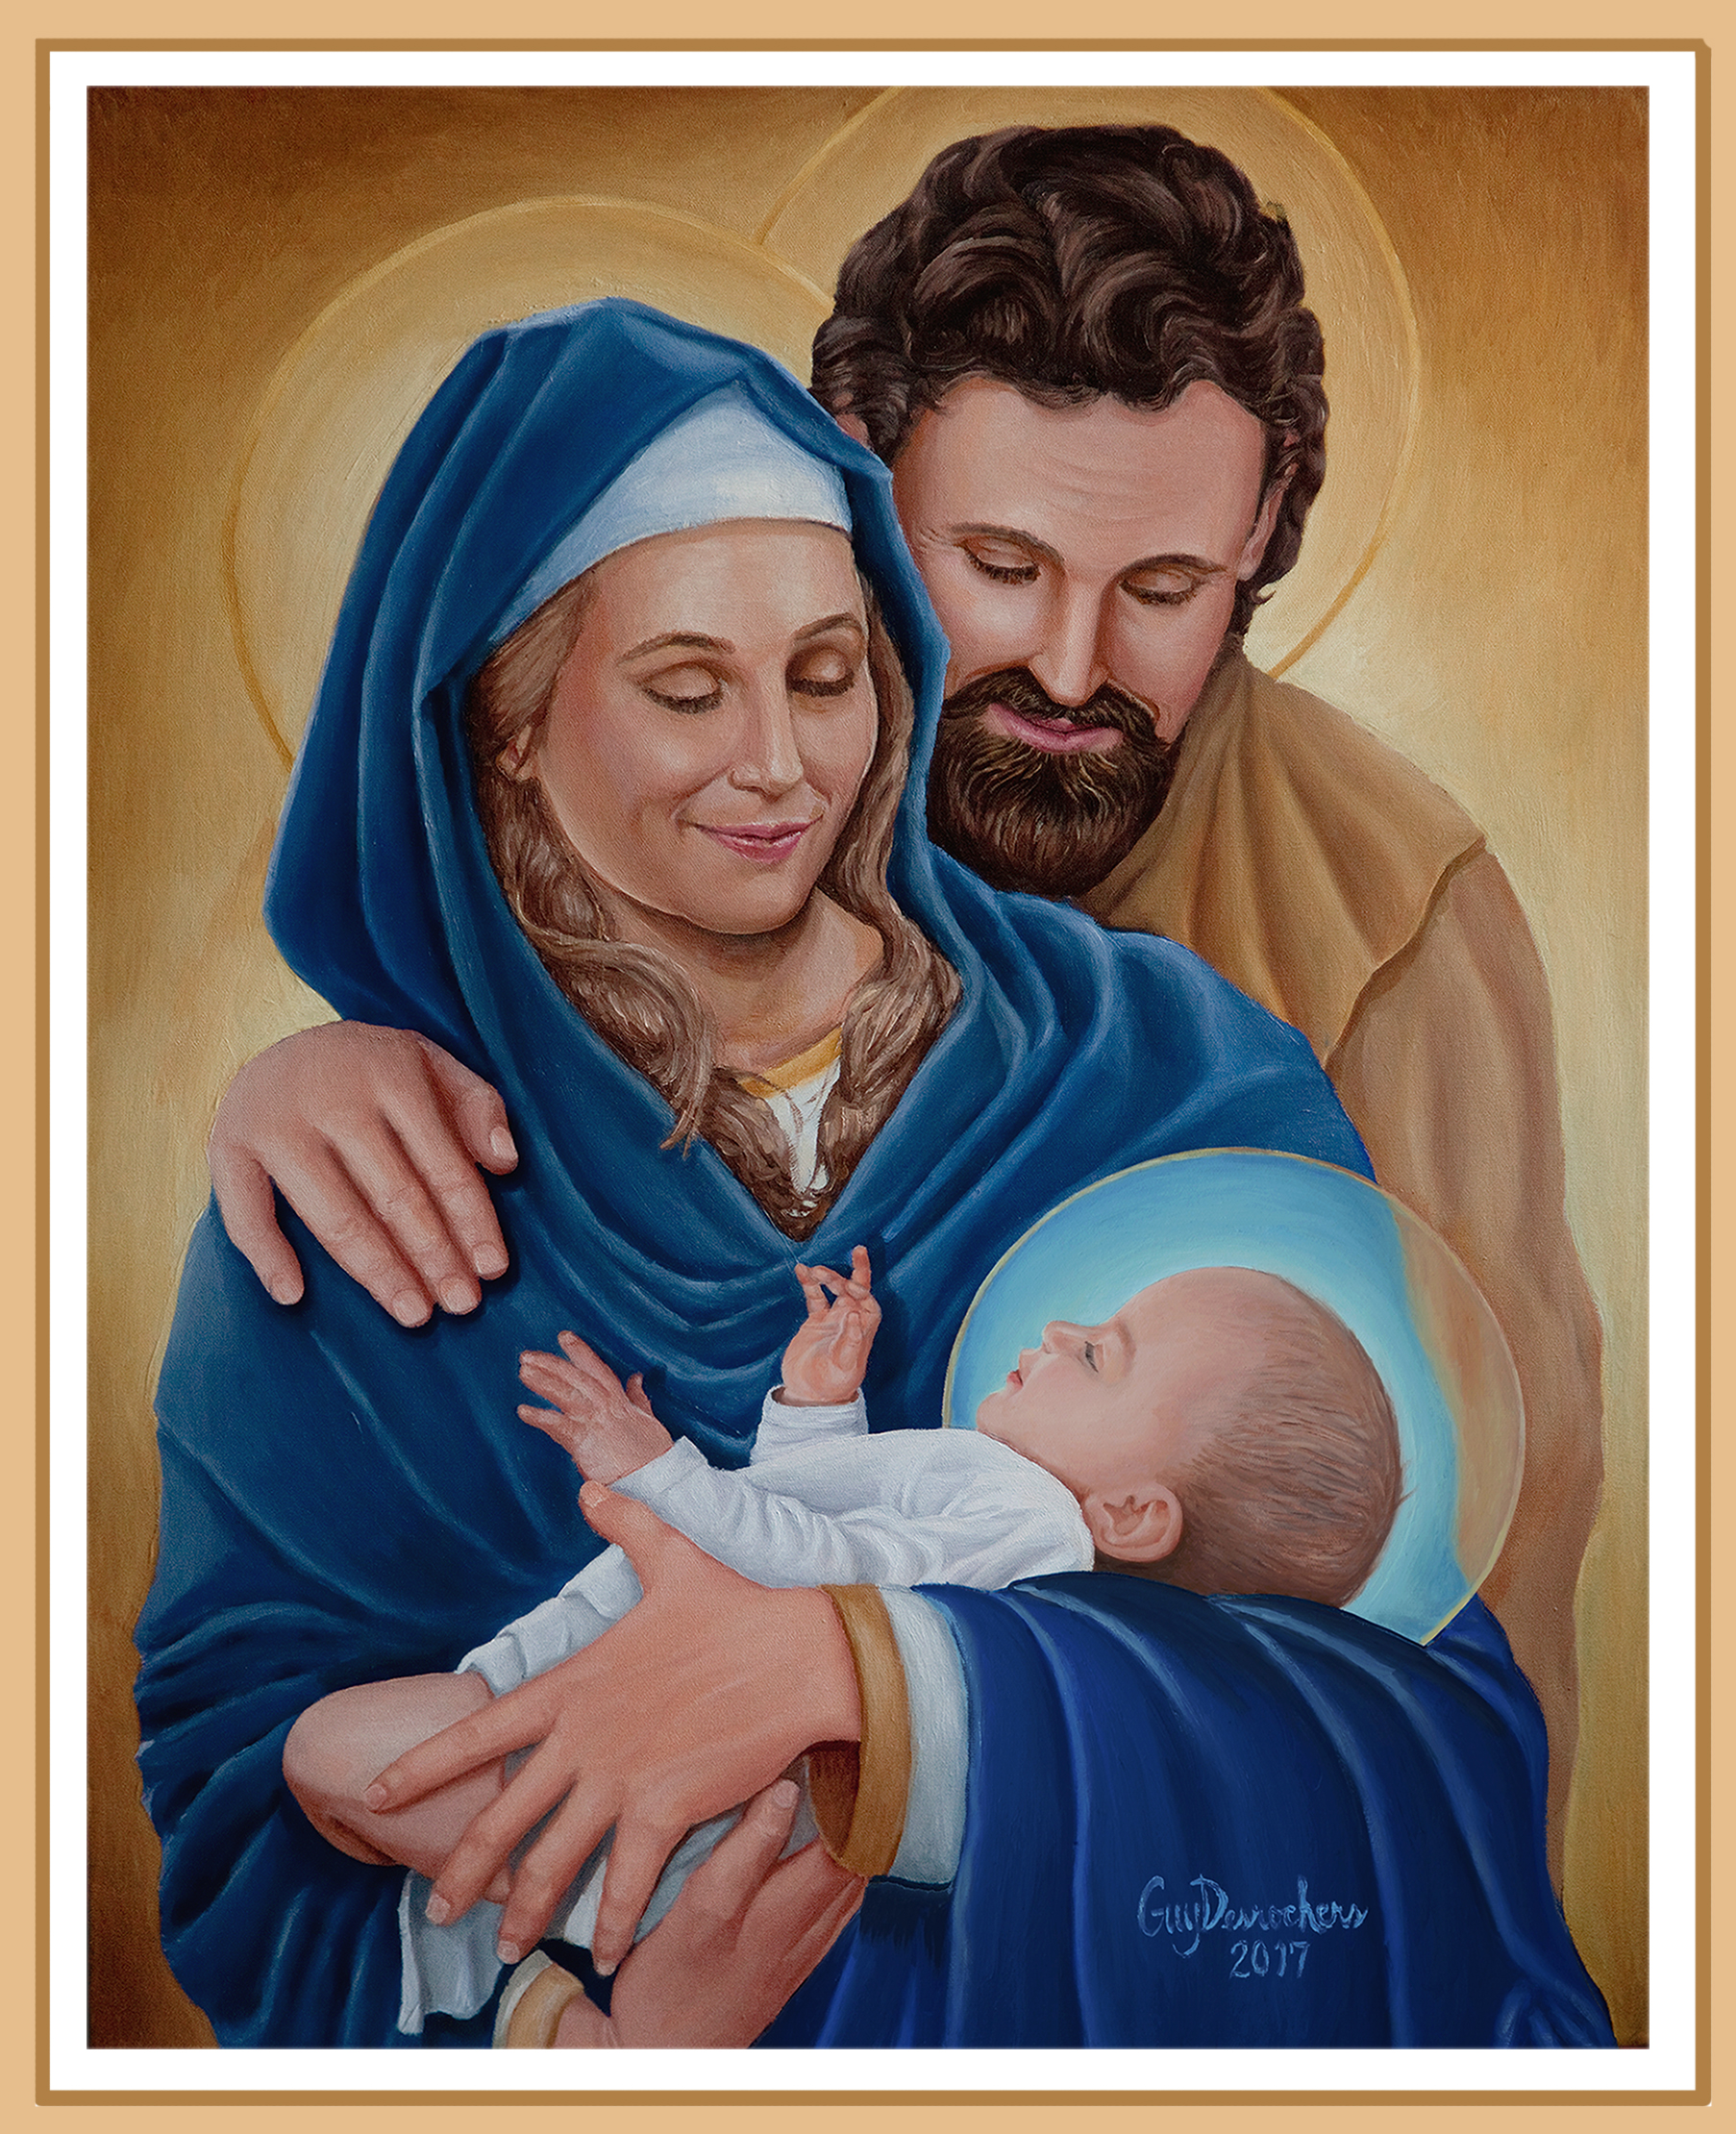 La Sainte Famille de Jésus, Marie et Joseph (Tableau de Mgr Guy Desrochers, évêque de Pembroke en Ontario au Canada reproduit avec la permission de l'auteur)